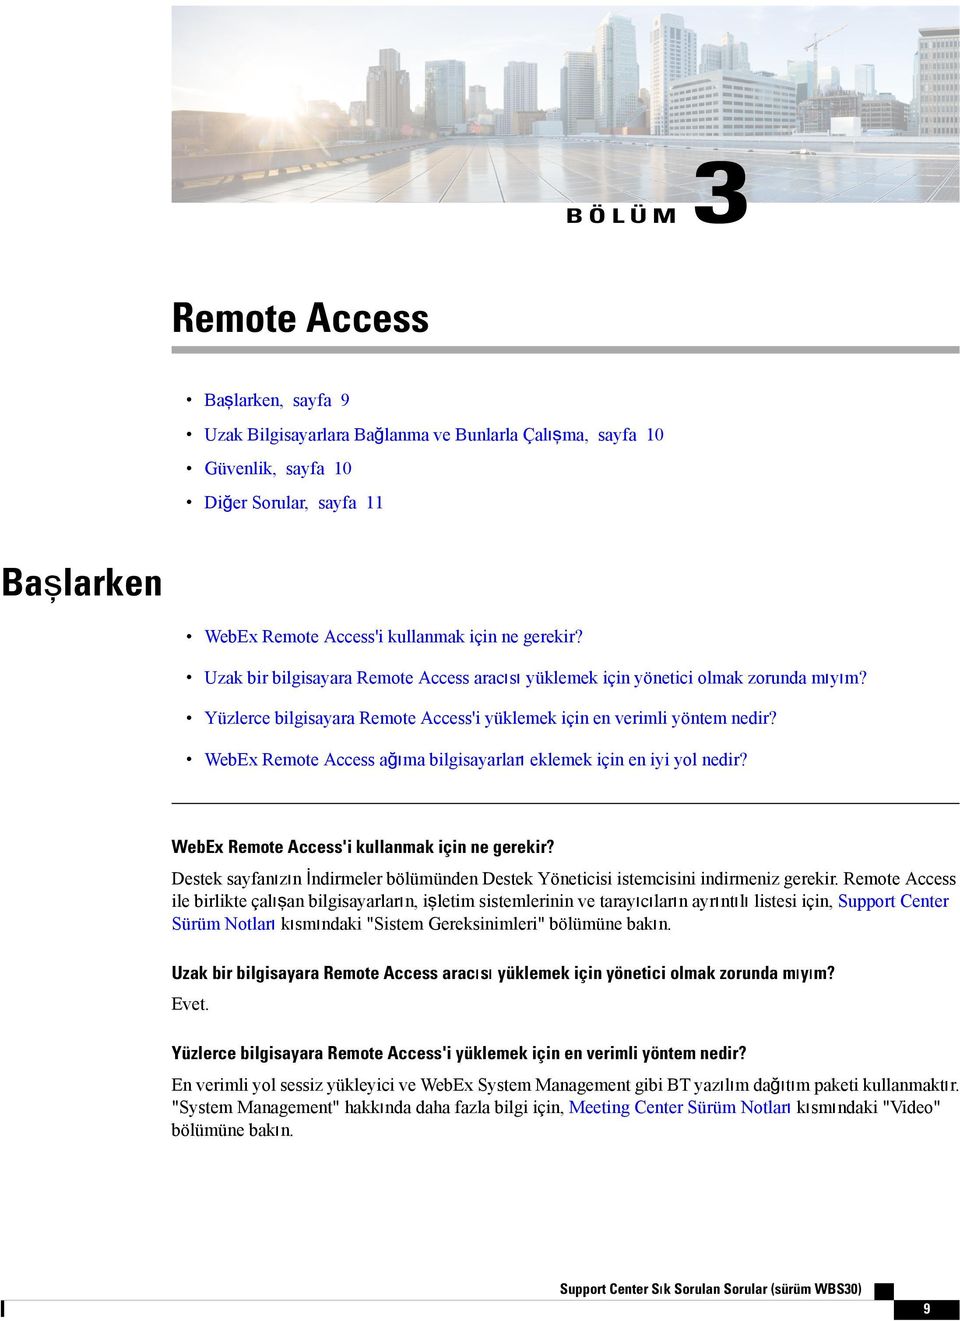 WebEx Remote Access ağıma bilgisayarları eklemek için en iyi yol nedir? WebEx Remote Access'i kullanmak için ne gerekir?